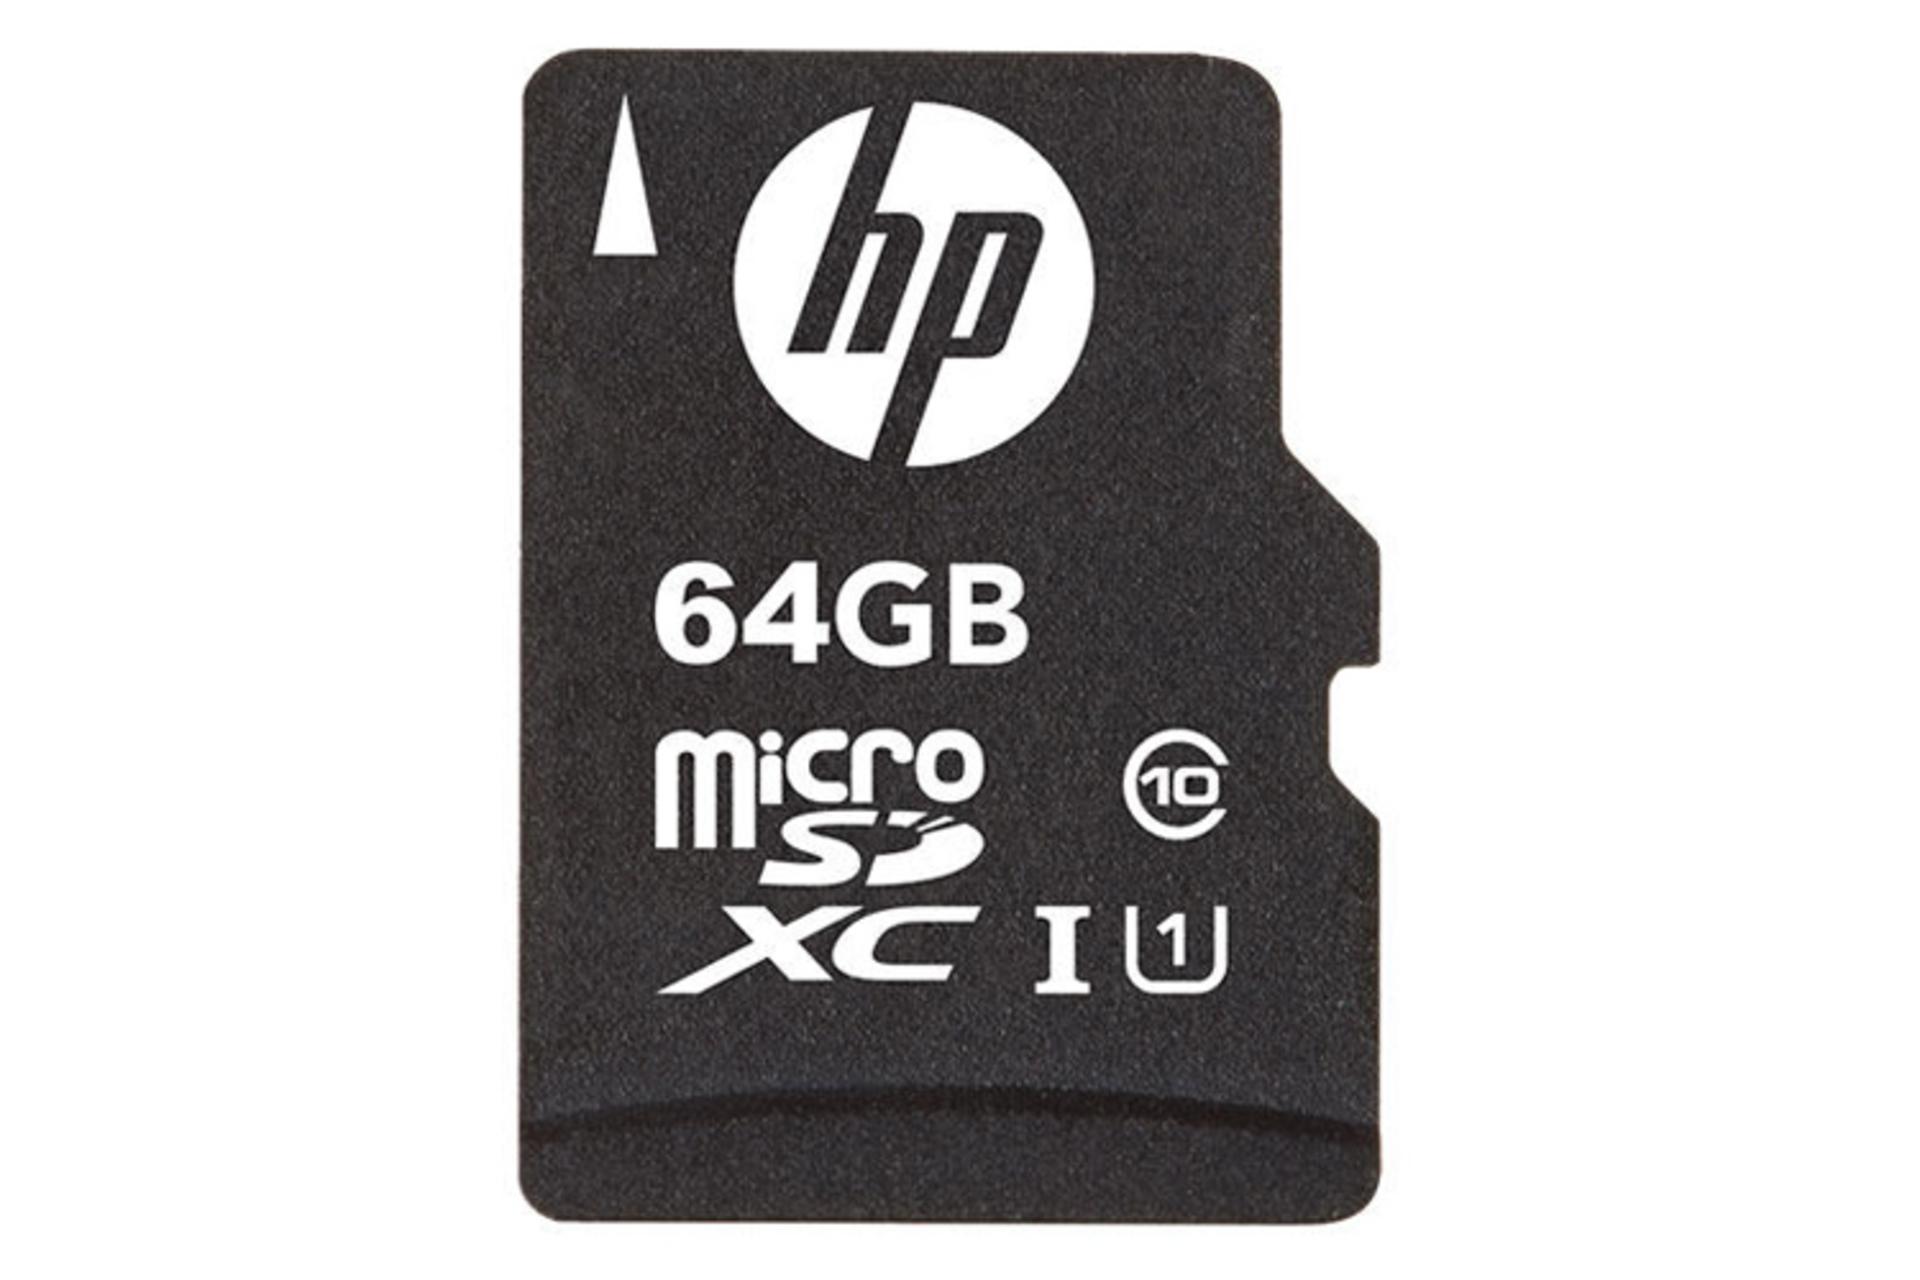 نمای روبرو  کارت حافظه اچ پی microSDXC با ظرفیت 64 گیگابایت مدل Mi210